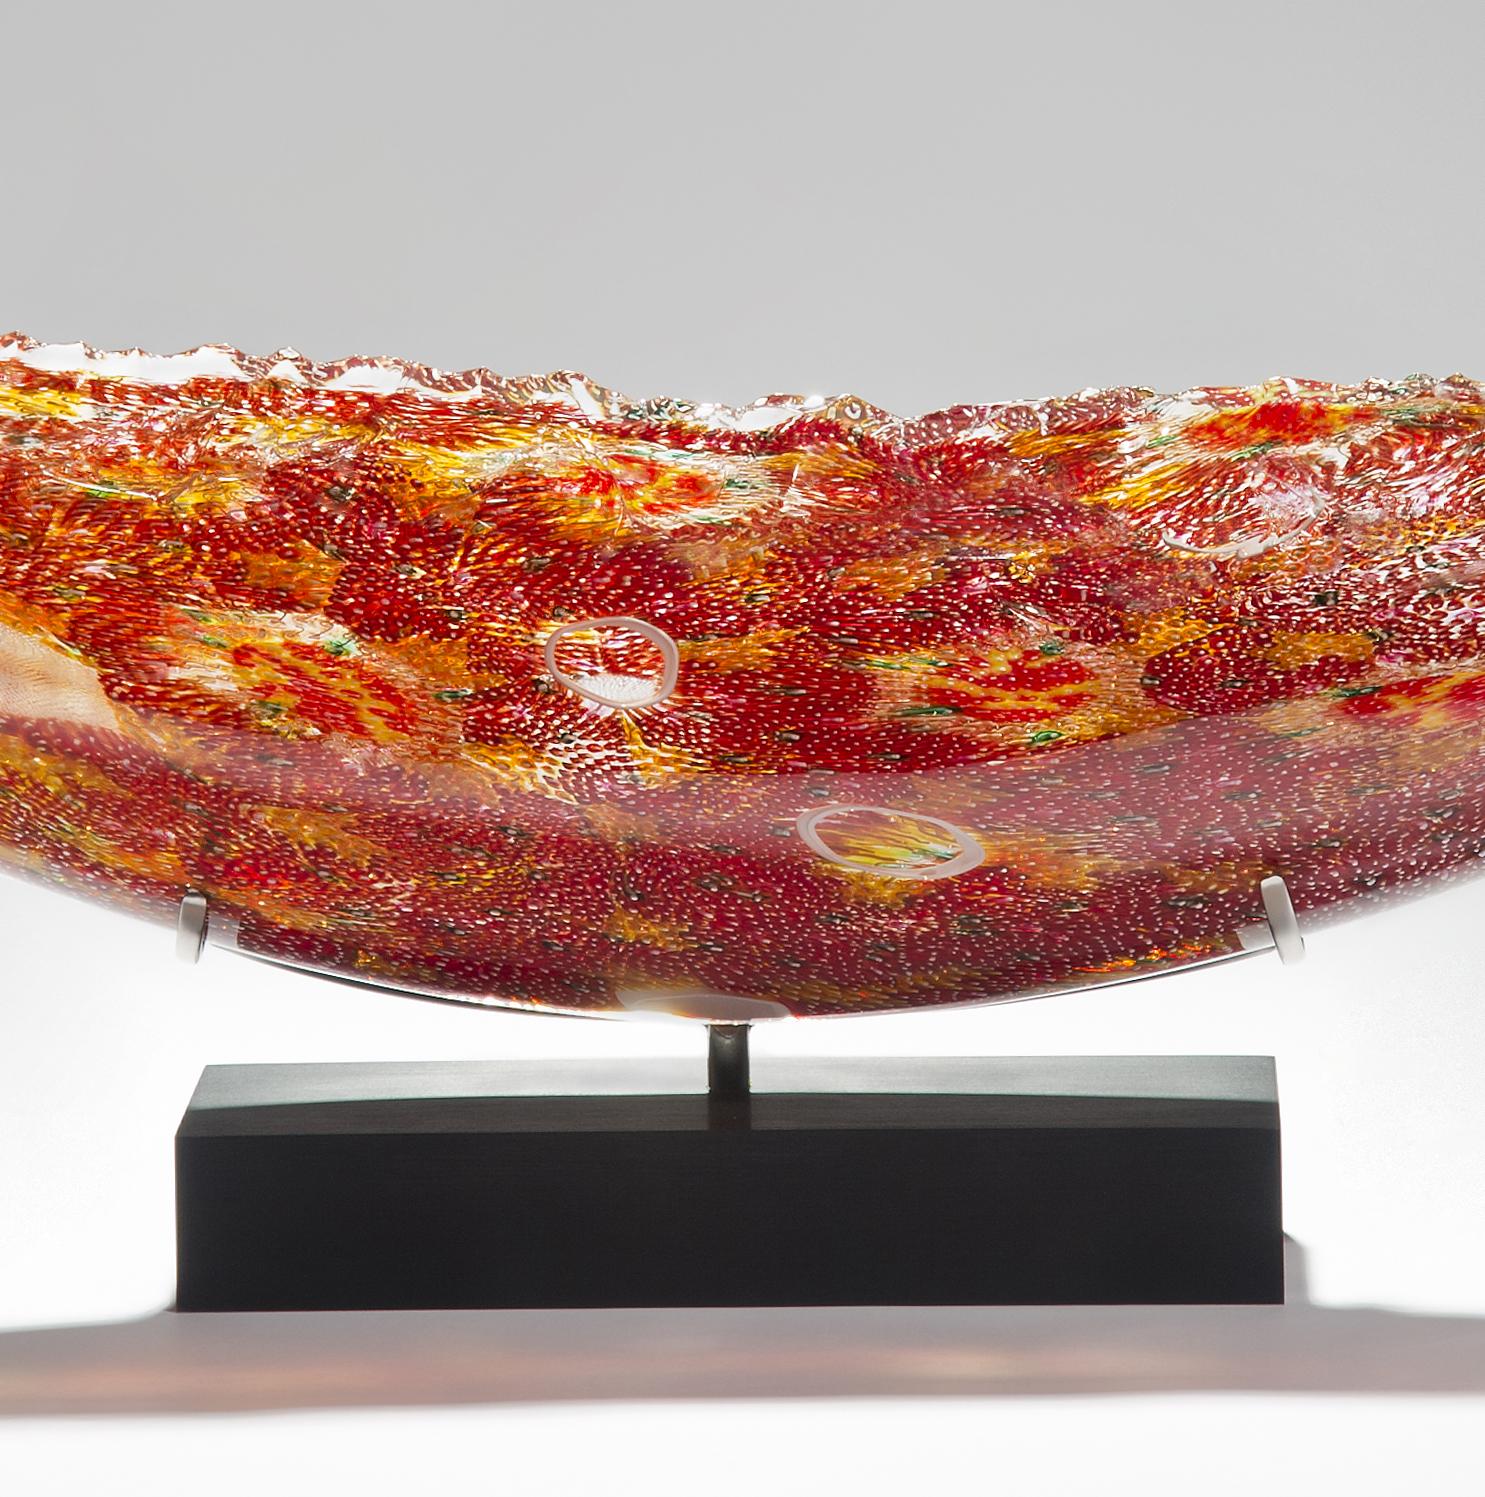 British Coral Quillon, a Unique Glass Sculpture by James Devereux & David Patchen